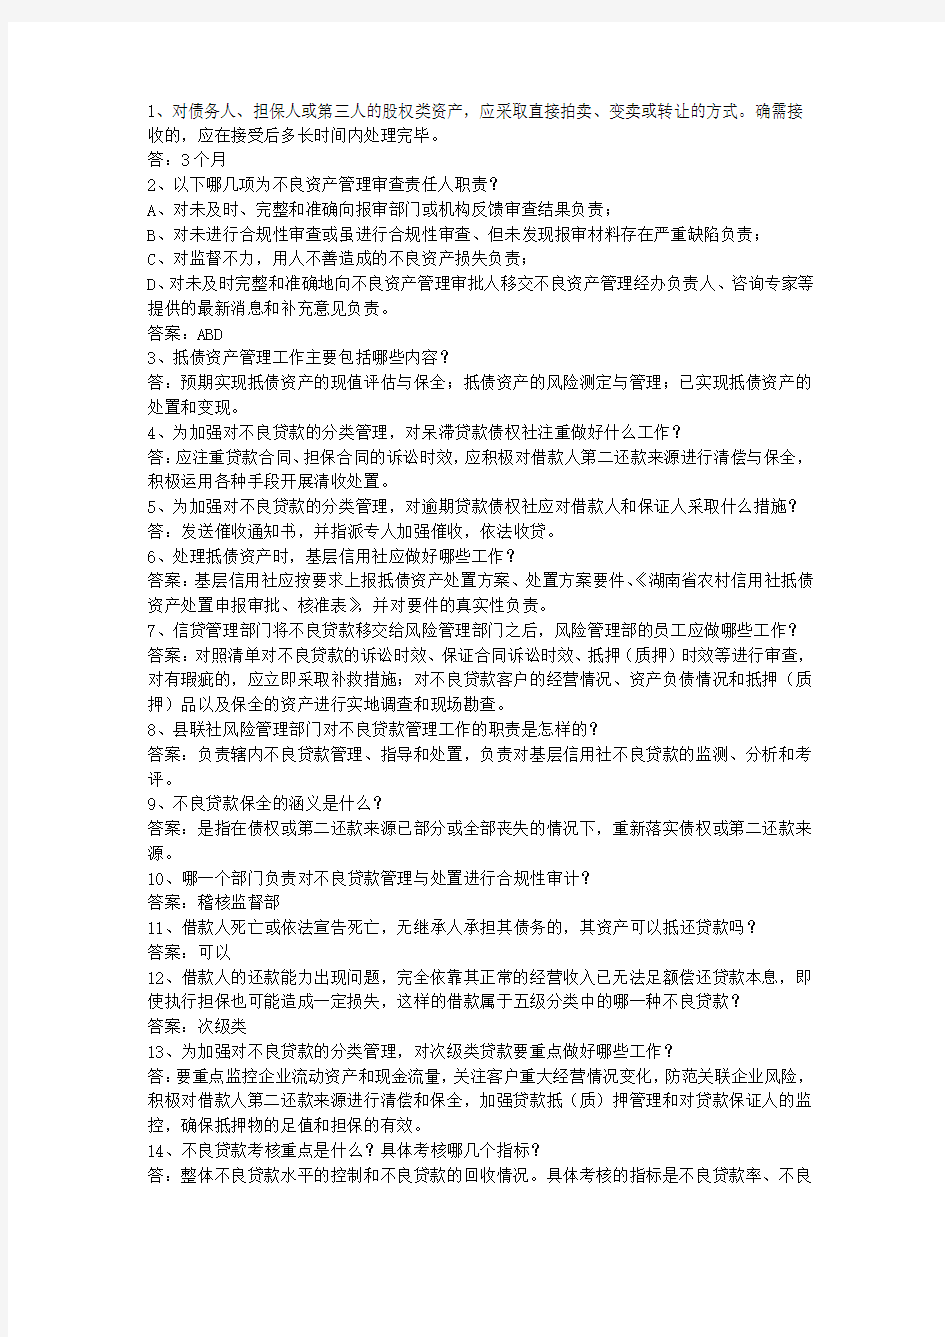 2014青海省农村信用社招考最新考试试题库(完整版)